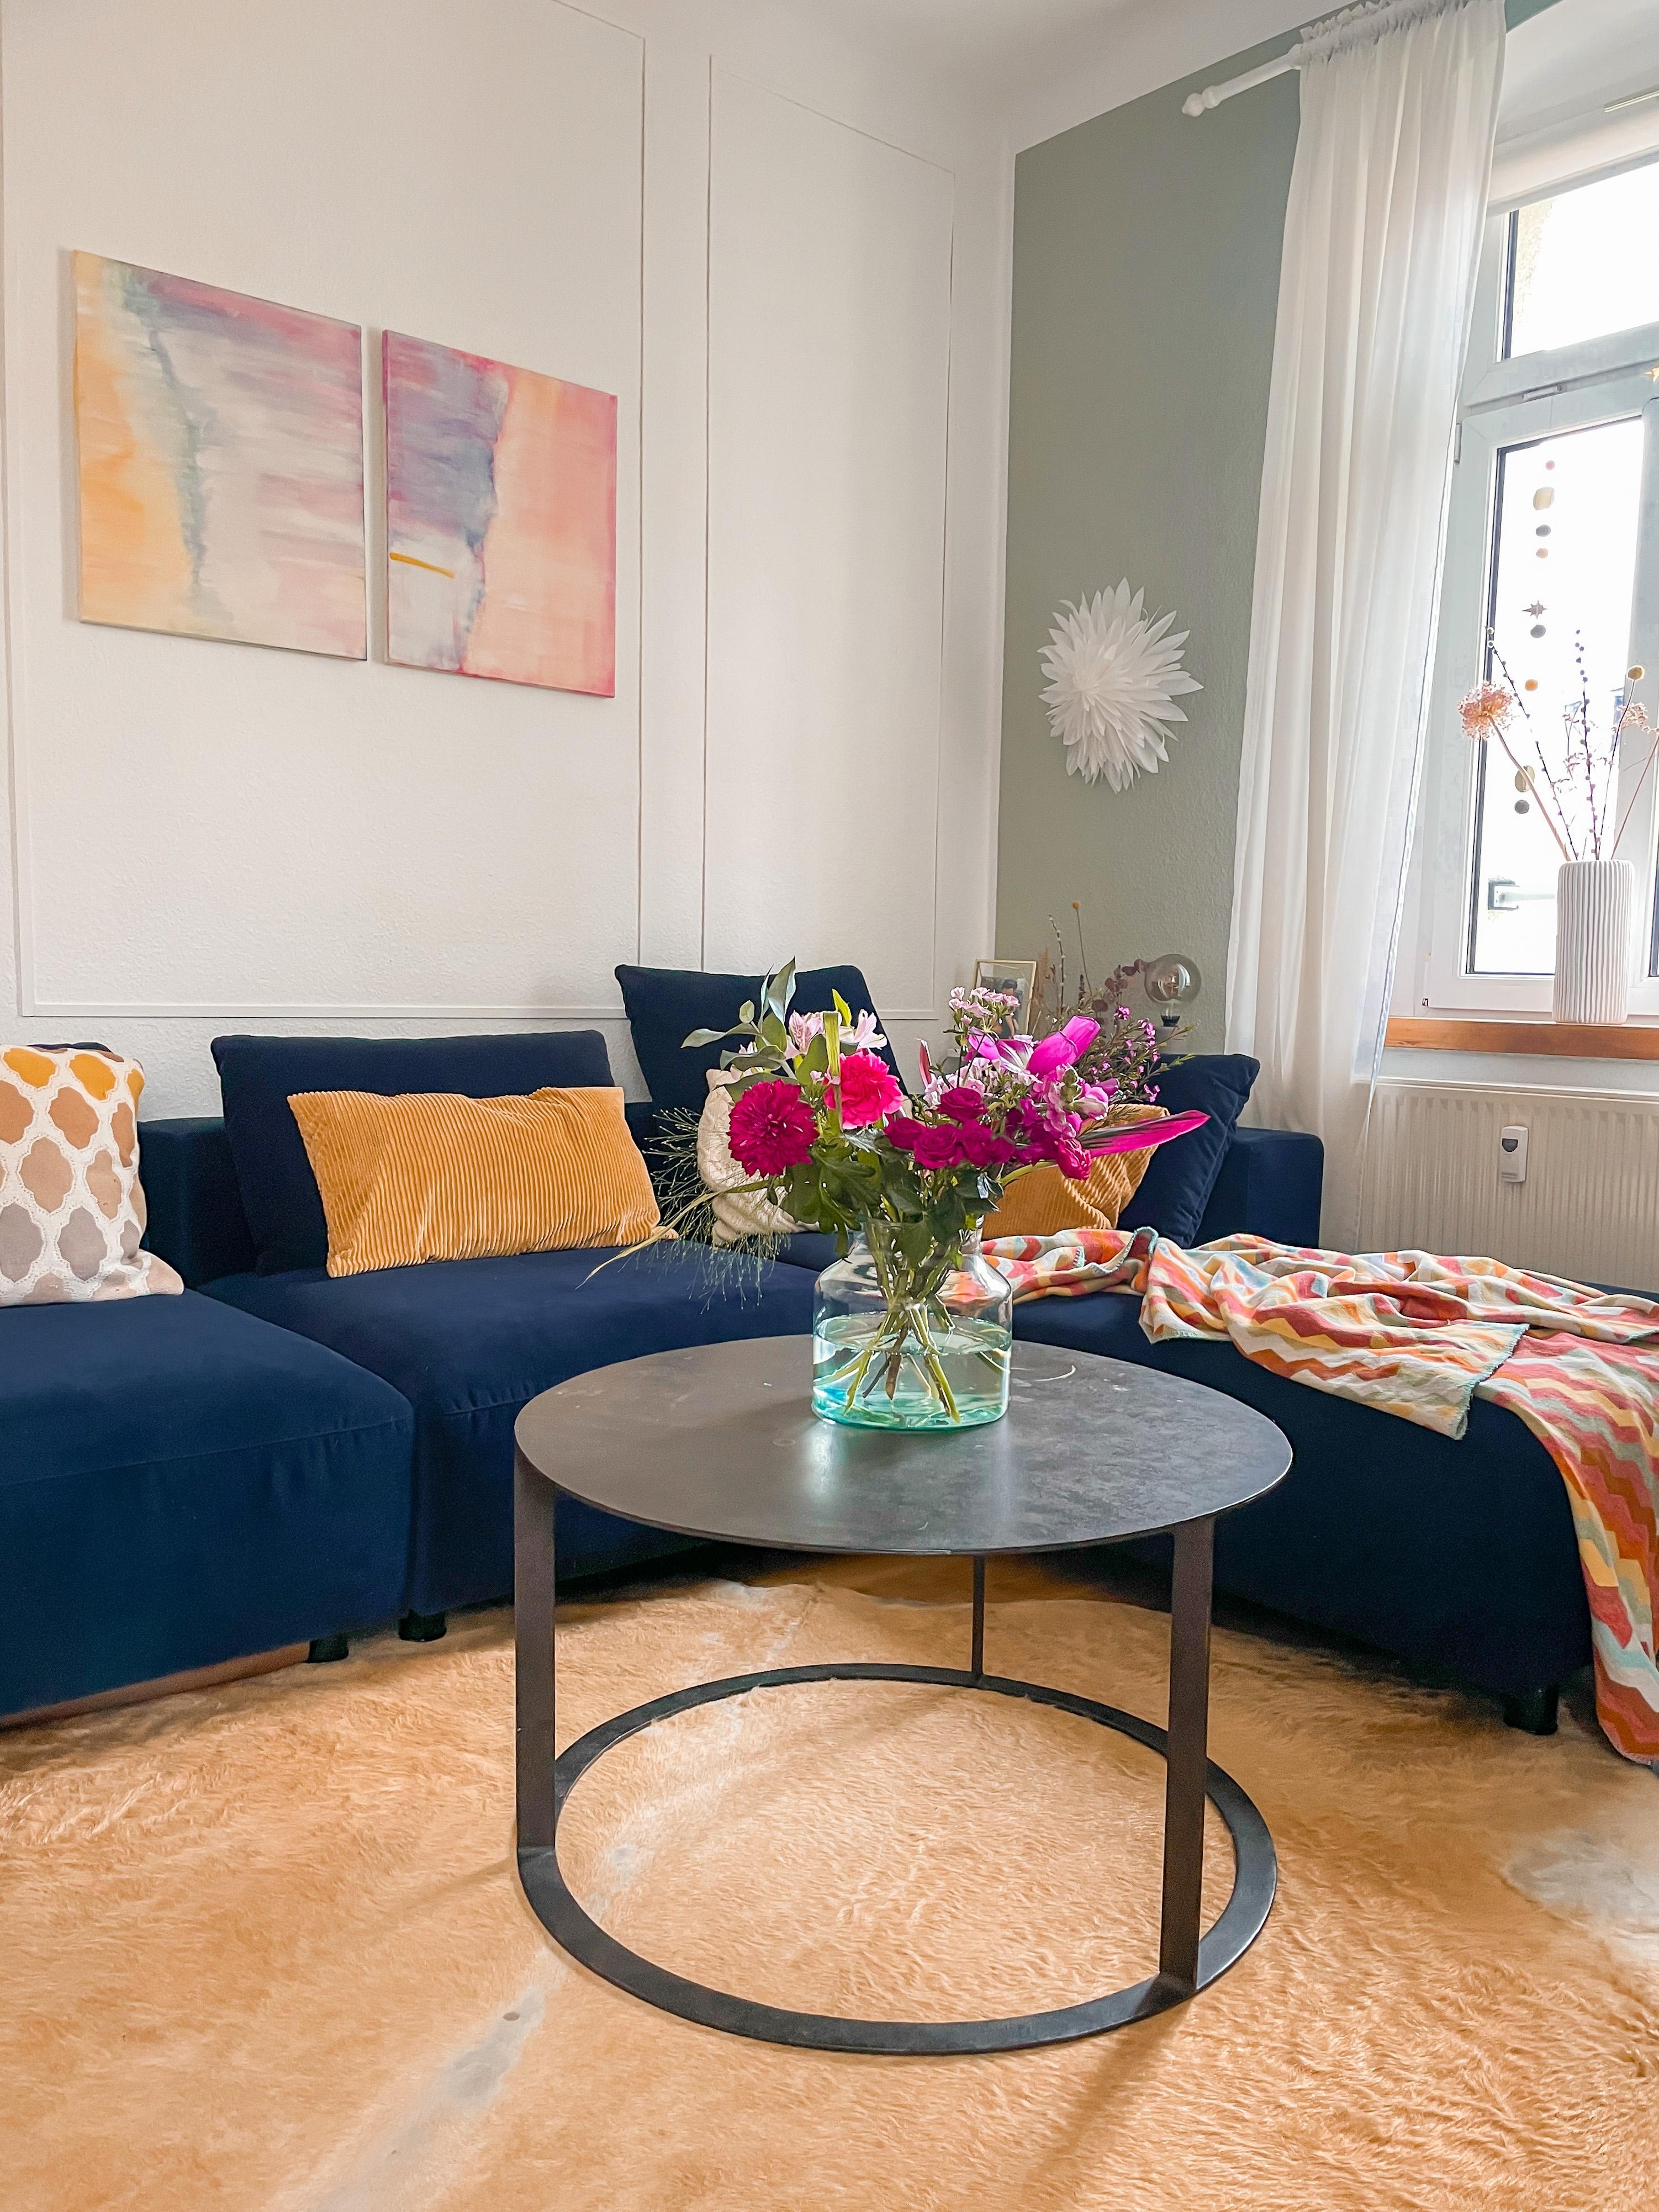 #sofasamstag #sofa #blau #schönerwohnenfarbe #harmonischesjadegrün #wohnzimmer #kunst #bilder #diy #blumen #flowers